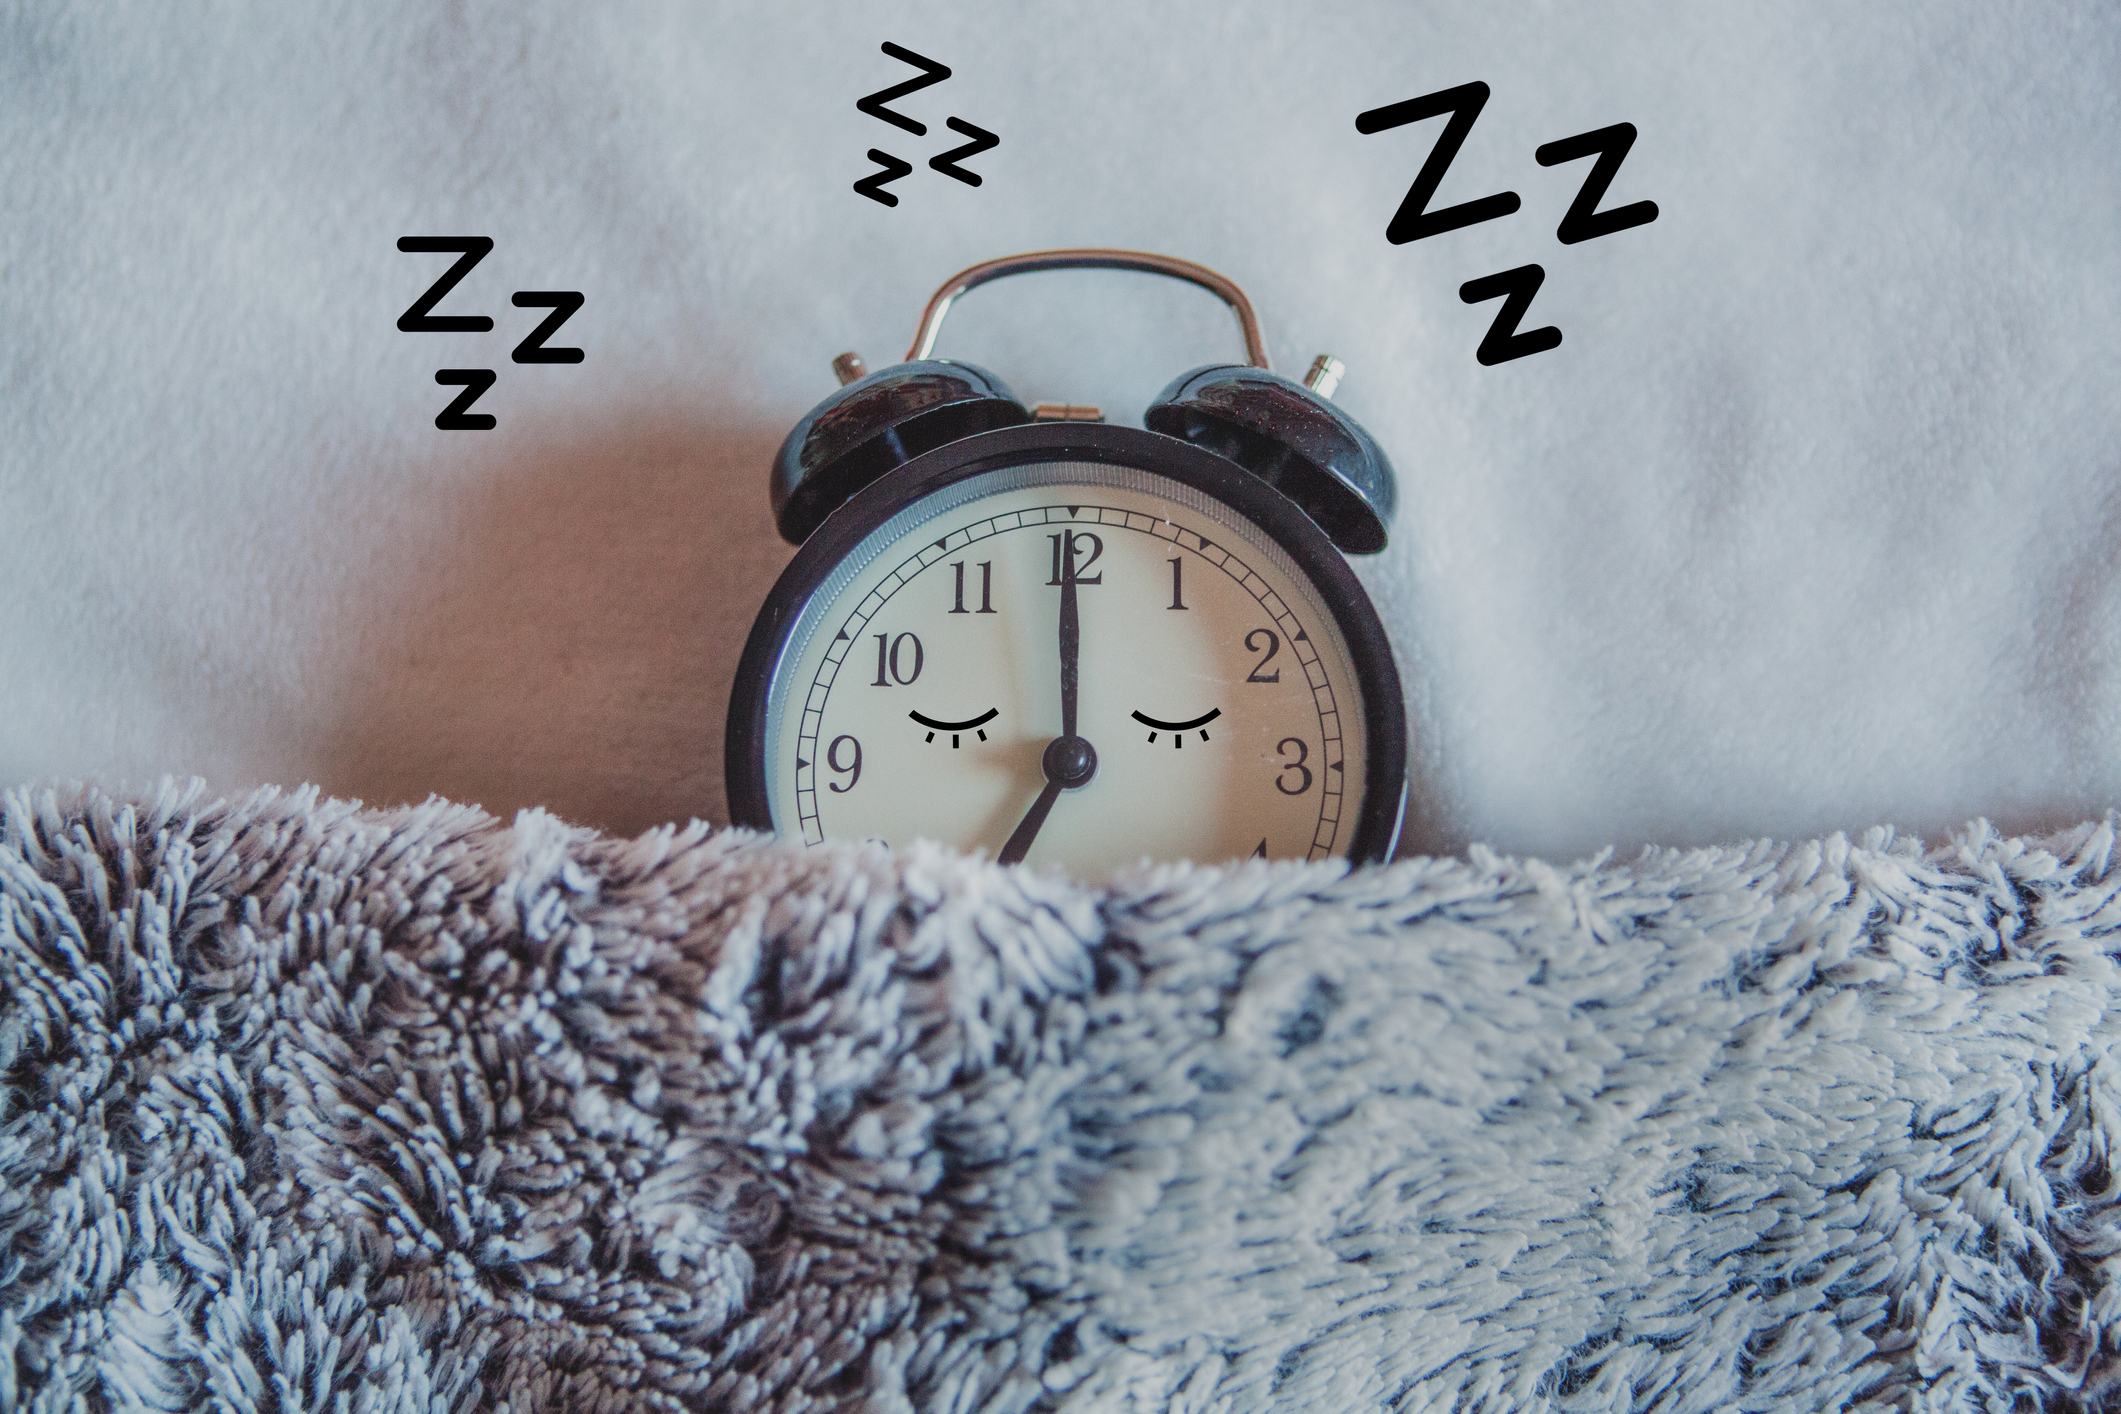 How to fix your sleep schedule